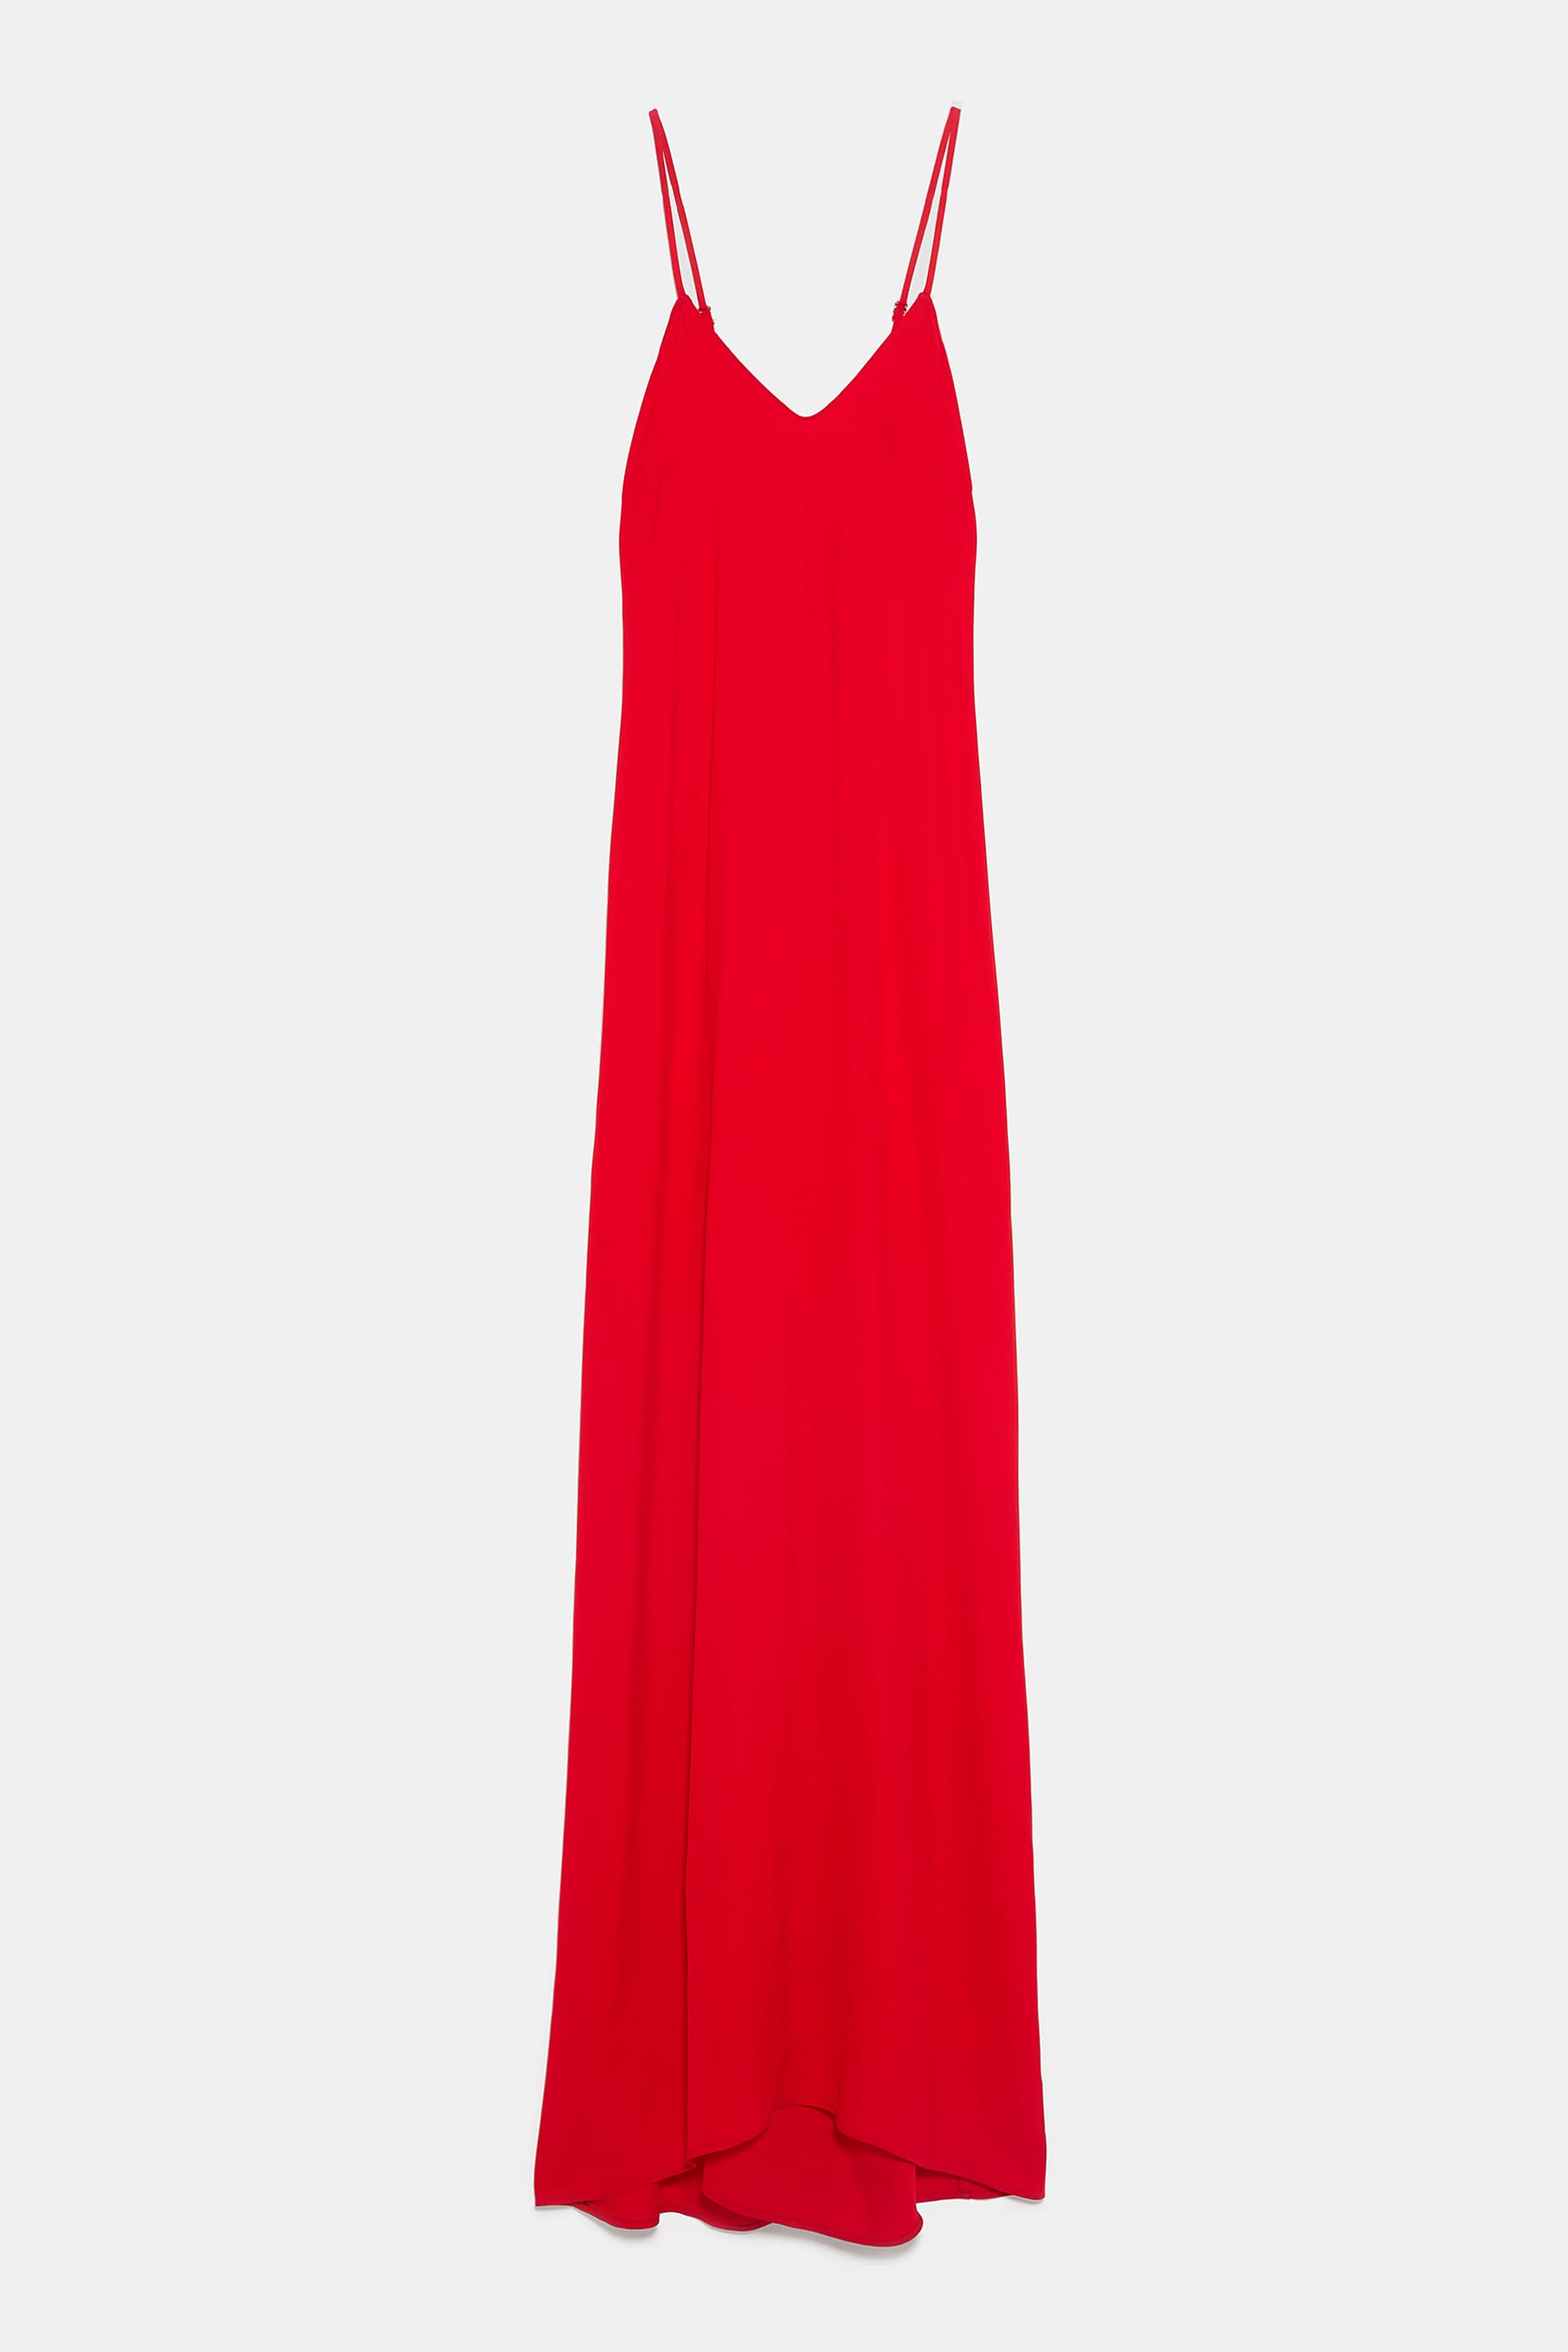 Vestido, Zara, €49,95